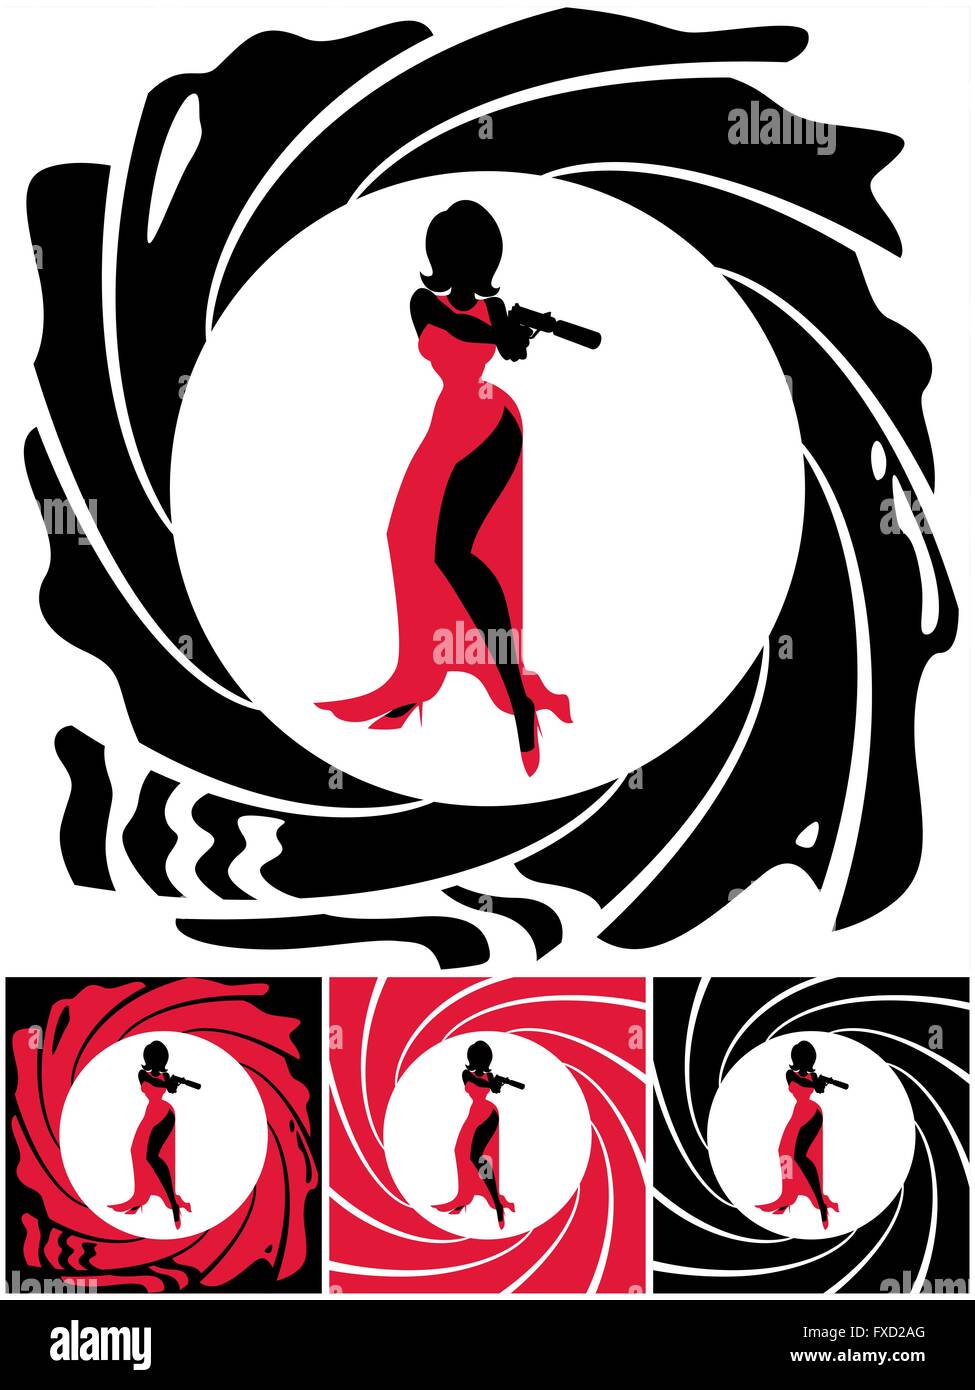 Silhouette des weiblichen Geheimagenten. Illustration ist in 4 Versionen. Keine Transparenz und Farbverläufe verwendet. Stock Vektor